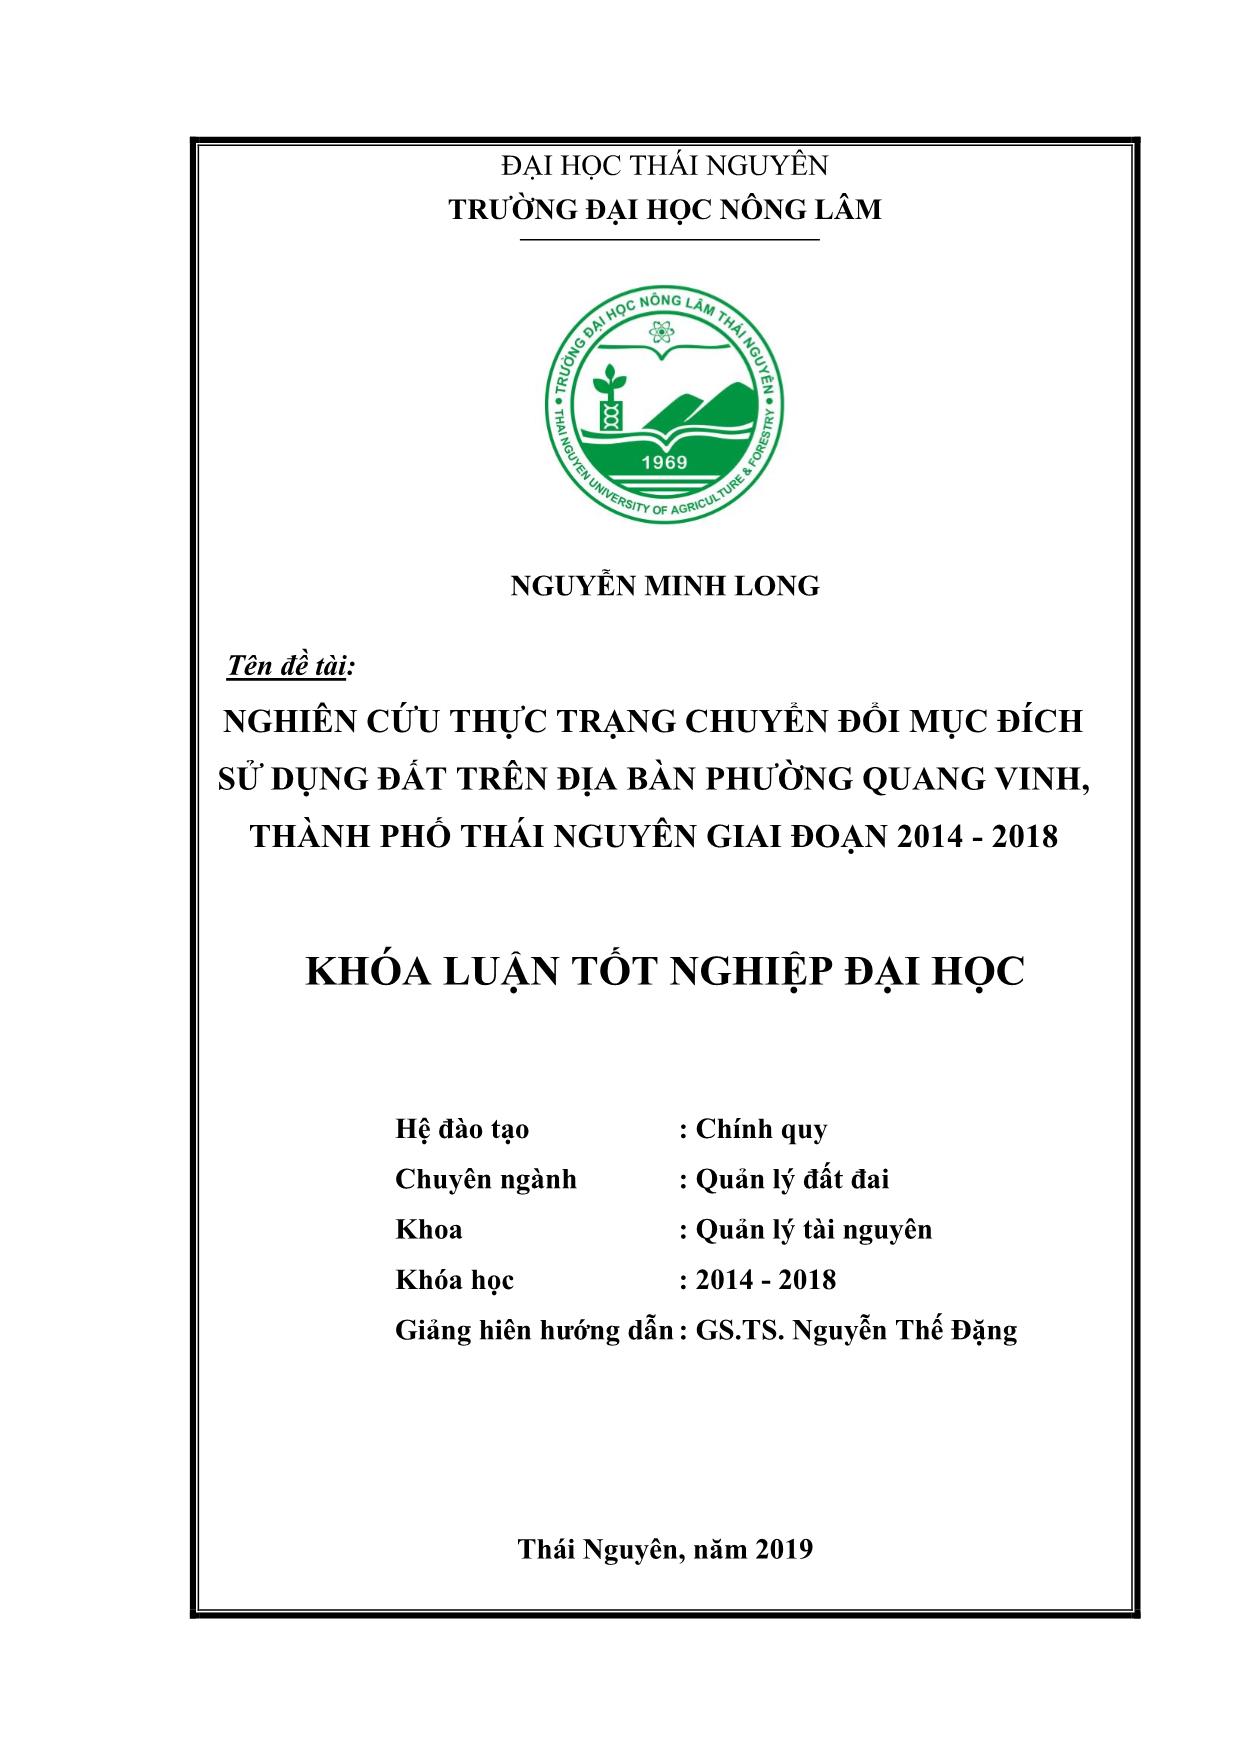 Khóa luận Nghiên cứu thực trạng chuyển đổi mục đích sử dụng đất trên địa bàn phường Quang Vinh, thành phố Thái Nguyên giai đoạn 2014-2018 trang 2